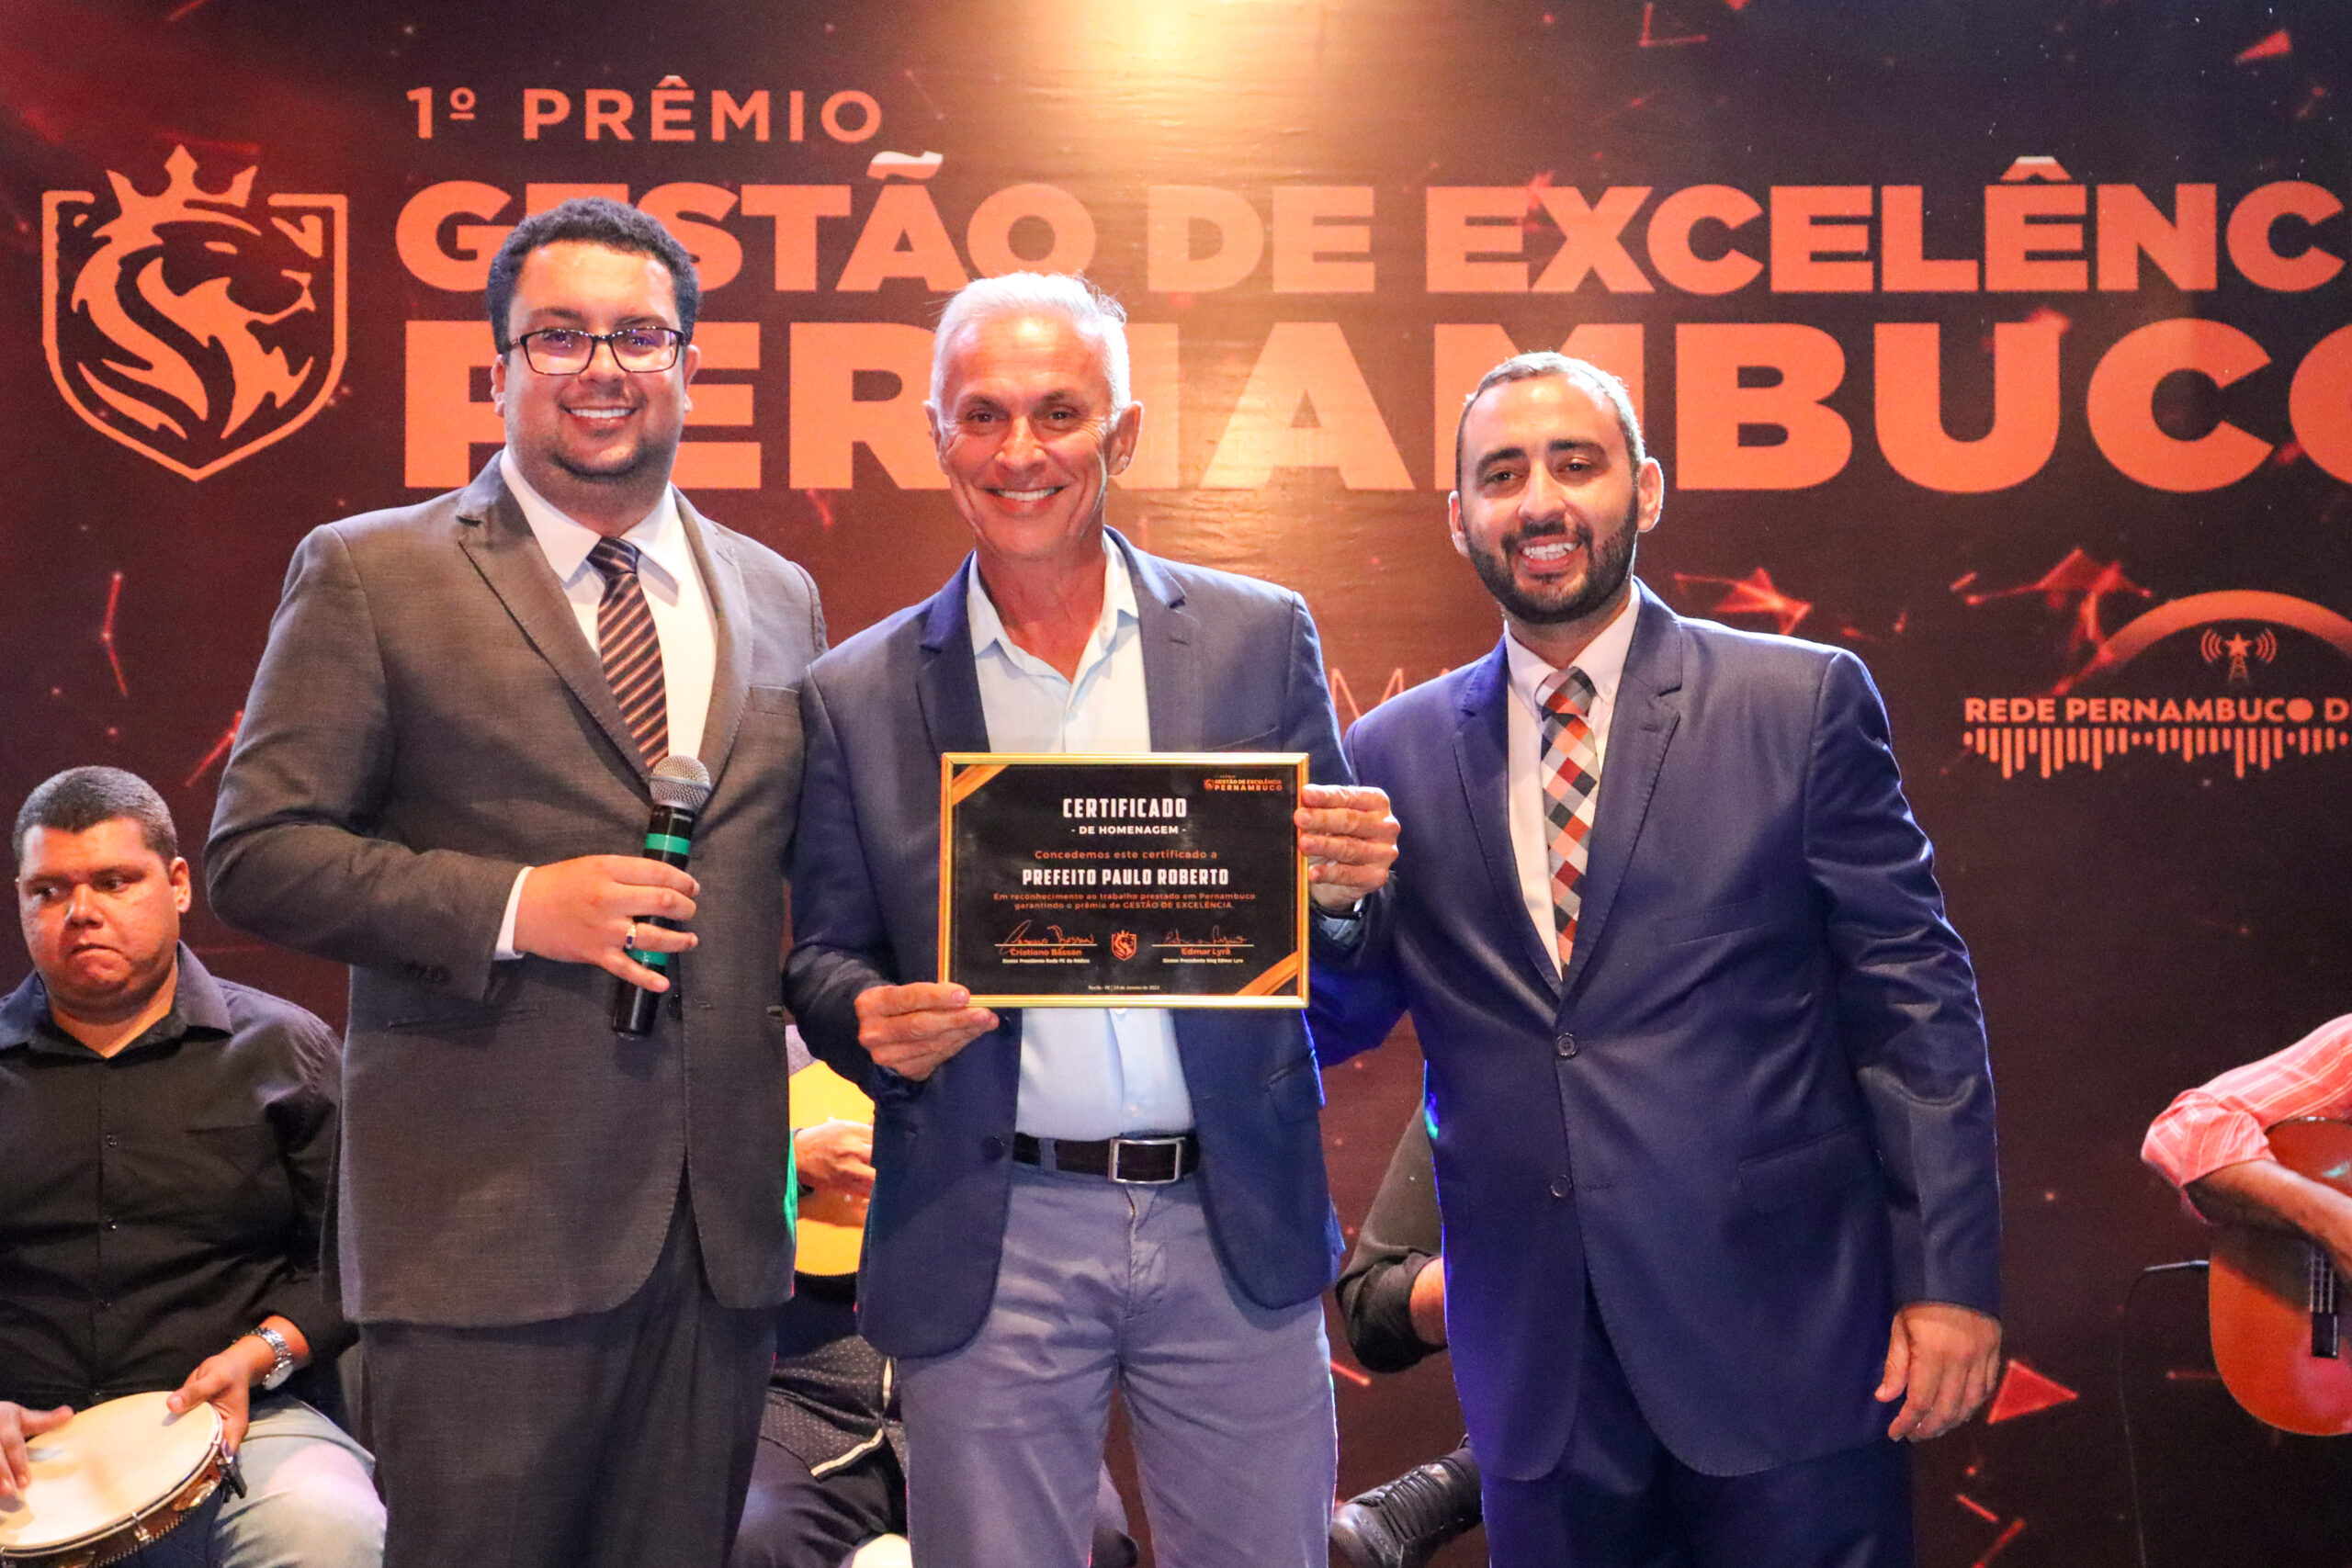 Prefeito de Vitória, Paulo Roberto, recebe “Prêmio Gestão de Excelência Pernambuco”